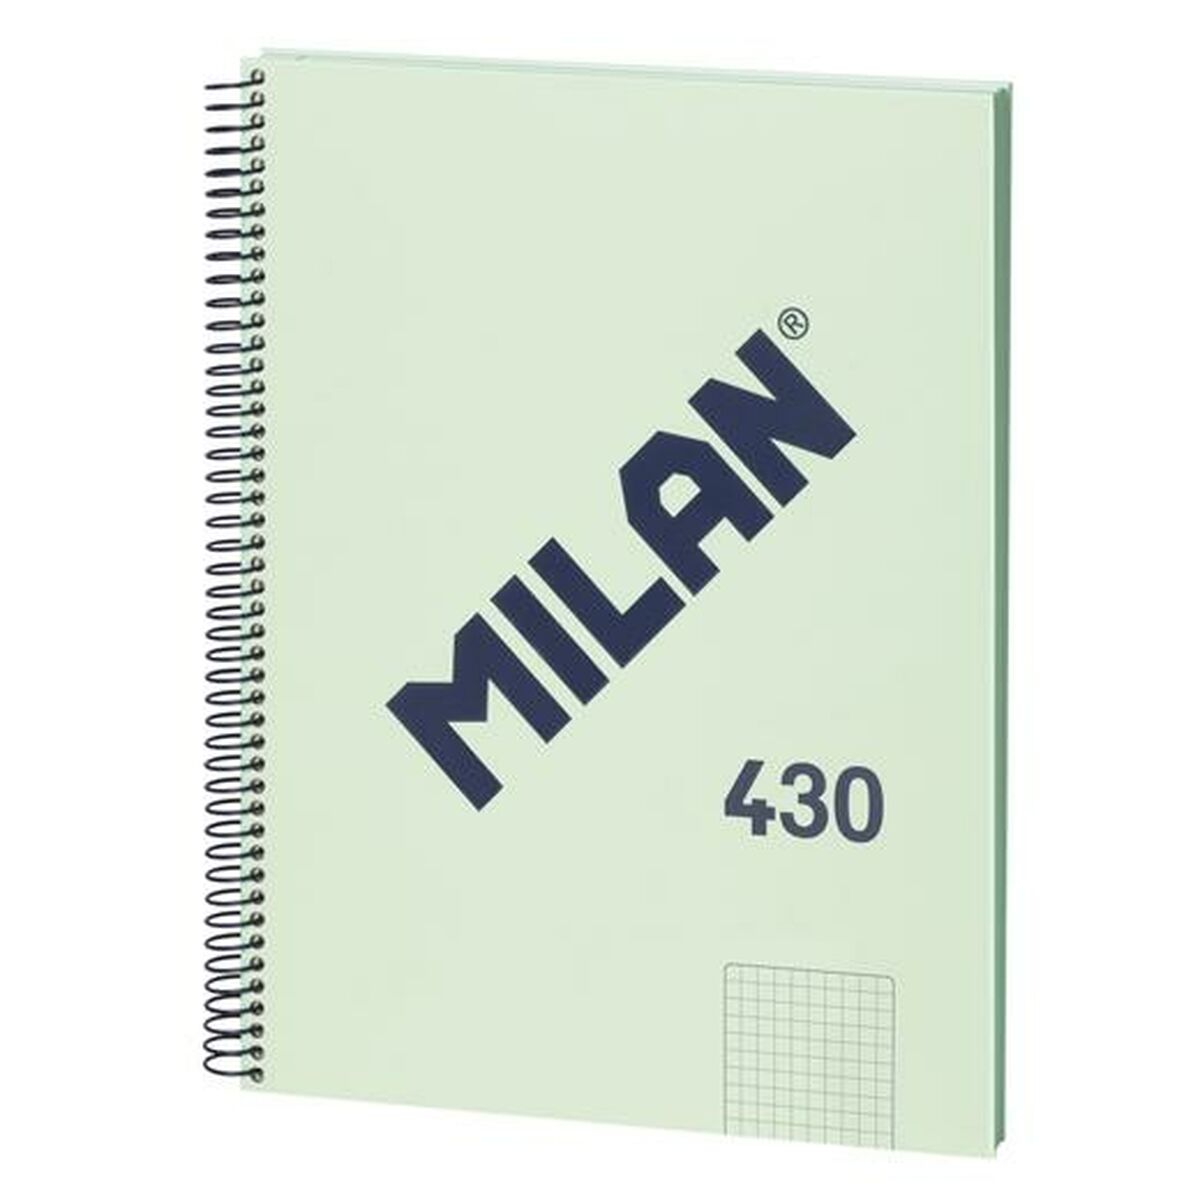 Muistikirja Milan 430 Vihreä A4 80 Levyt (3 osaa)